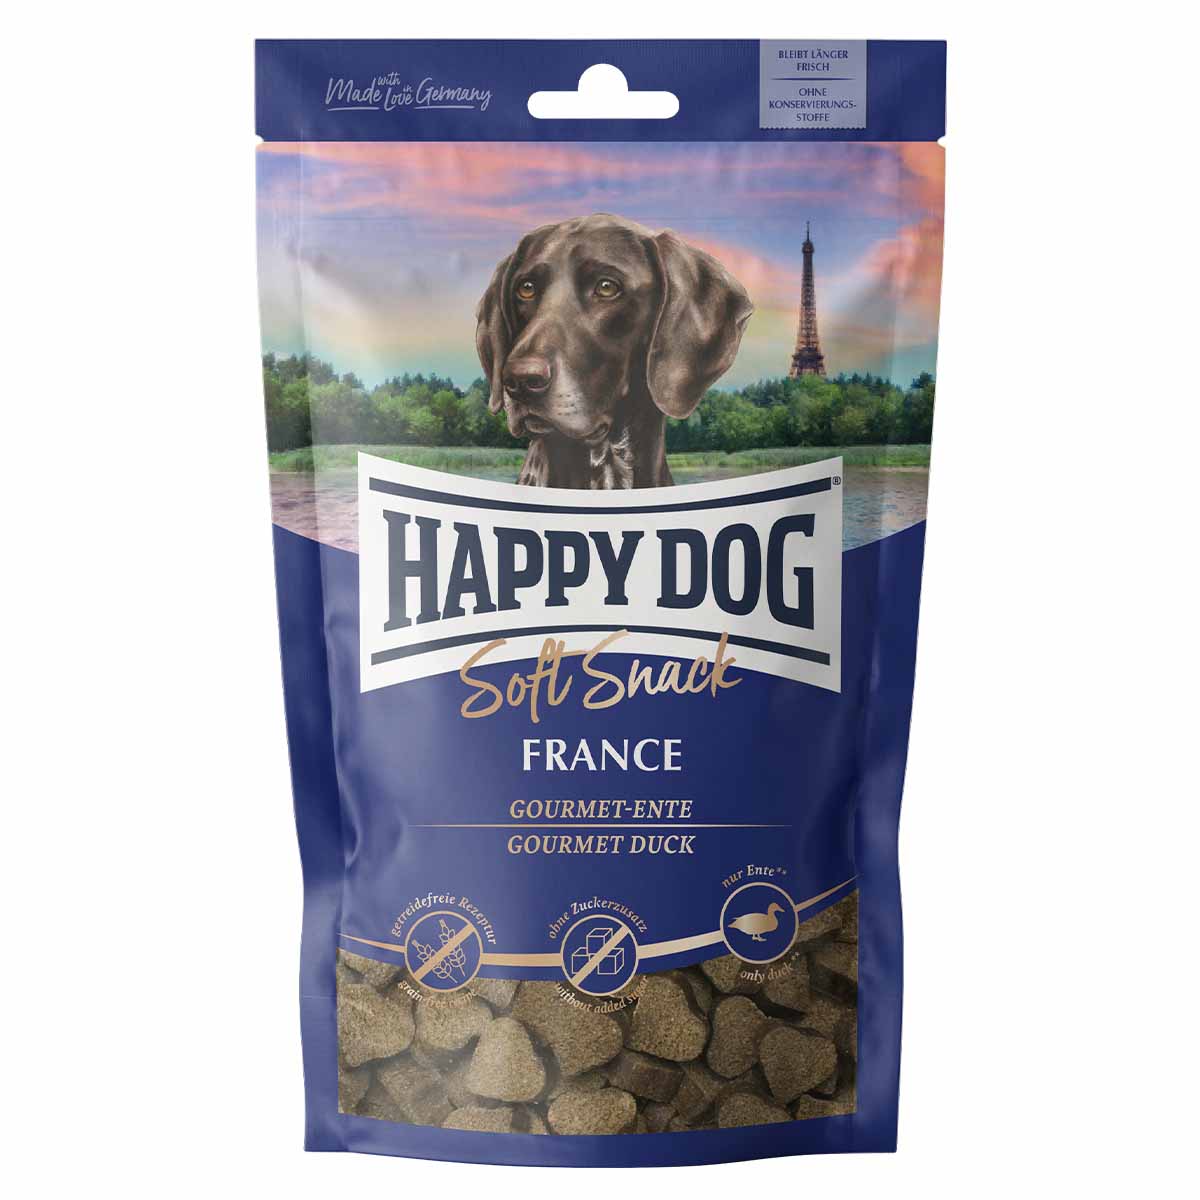 Happy Dog SoftSnack France 100g